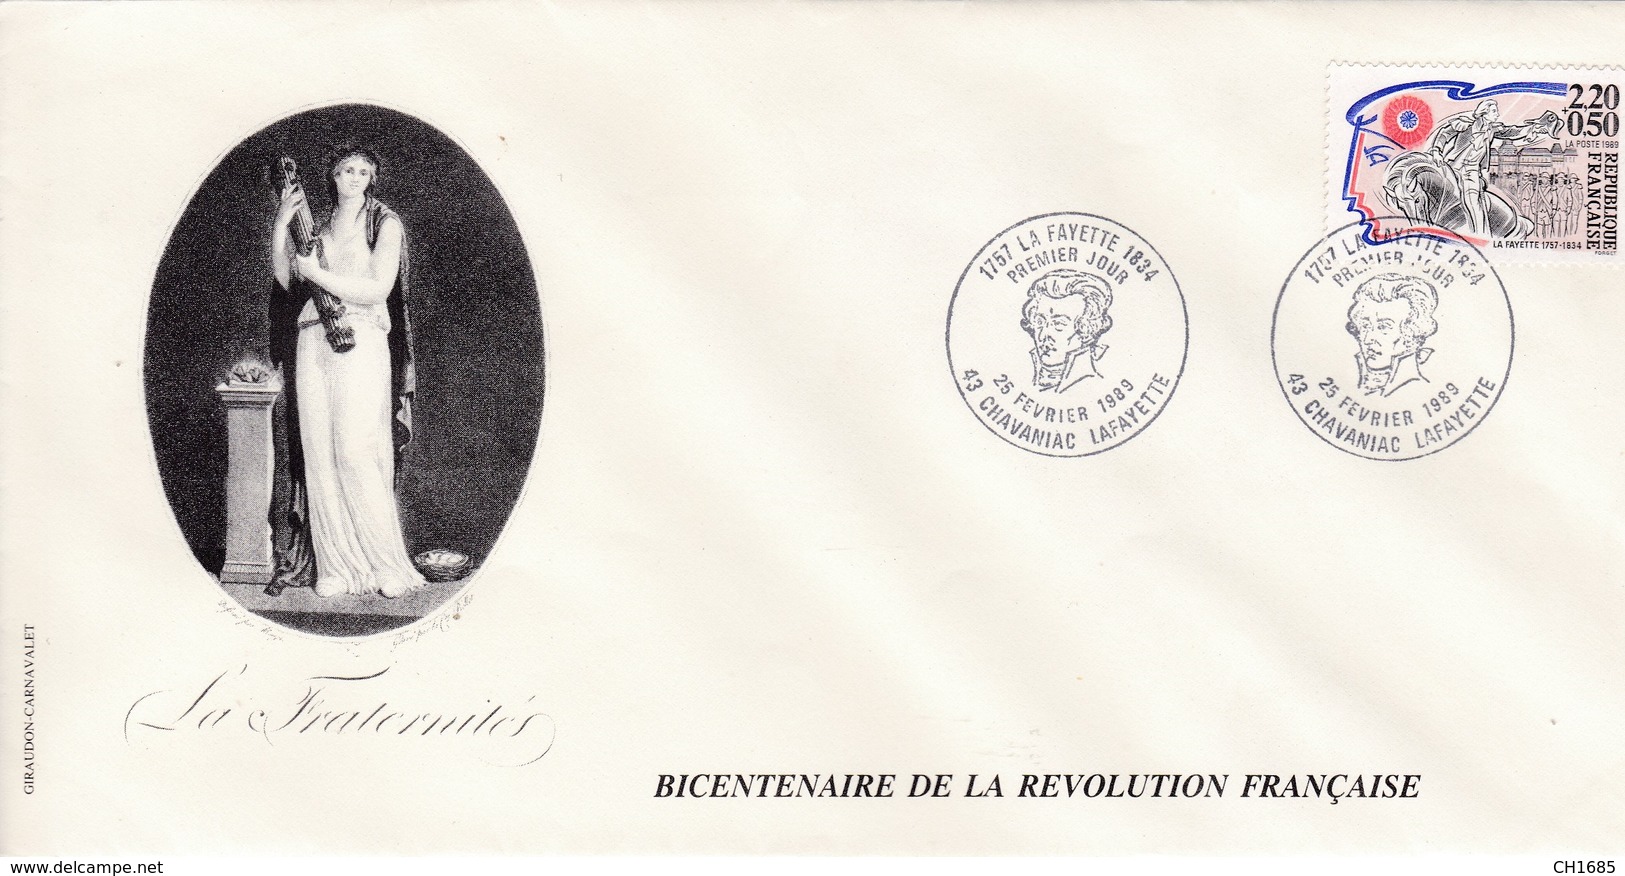 Bicentenaire De La Révolution Française : Lafayette Sur Enveloppe Grand Format 11 X 22 Oblitération Chavaniac Lafayette - Franz. Revolution